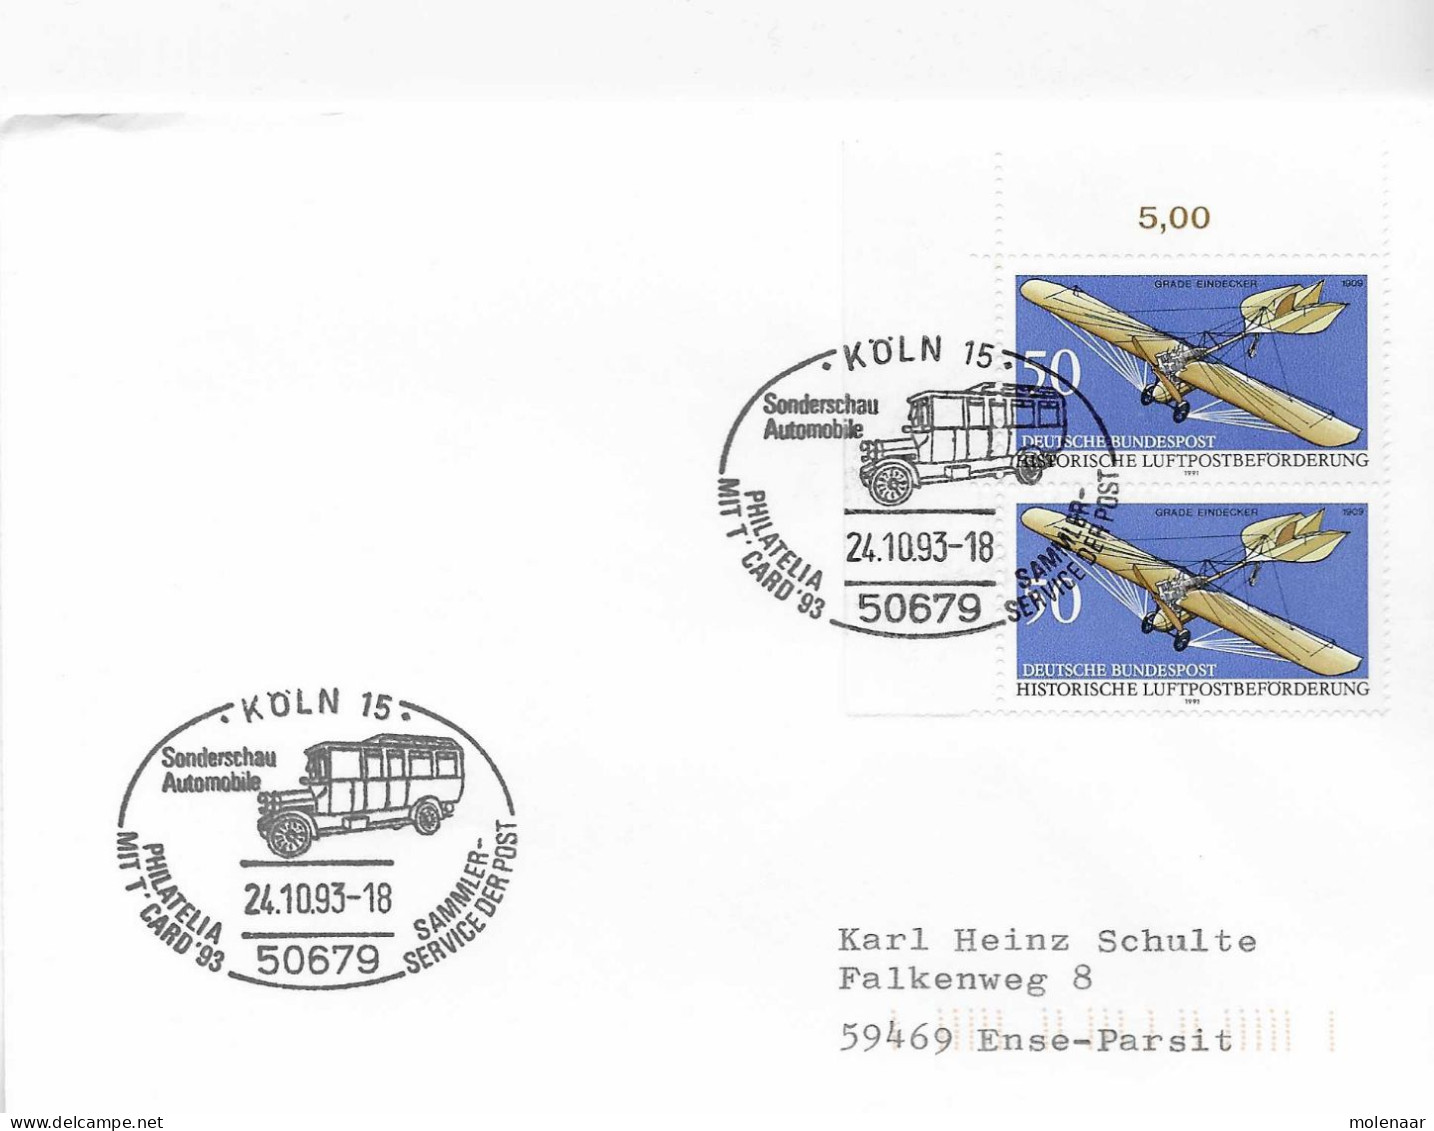 Postzegels > Europa > Duitsland > West-Duitsland > 1990-1999 > Brief Met 2x 1523 (17320) - Brieven En Documenten